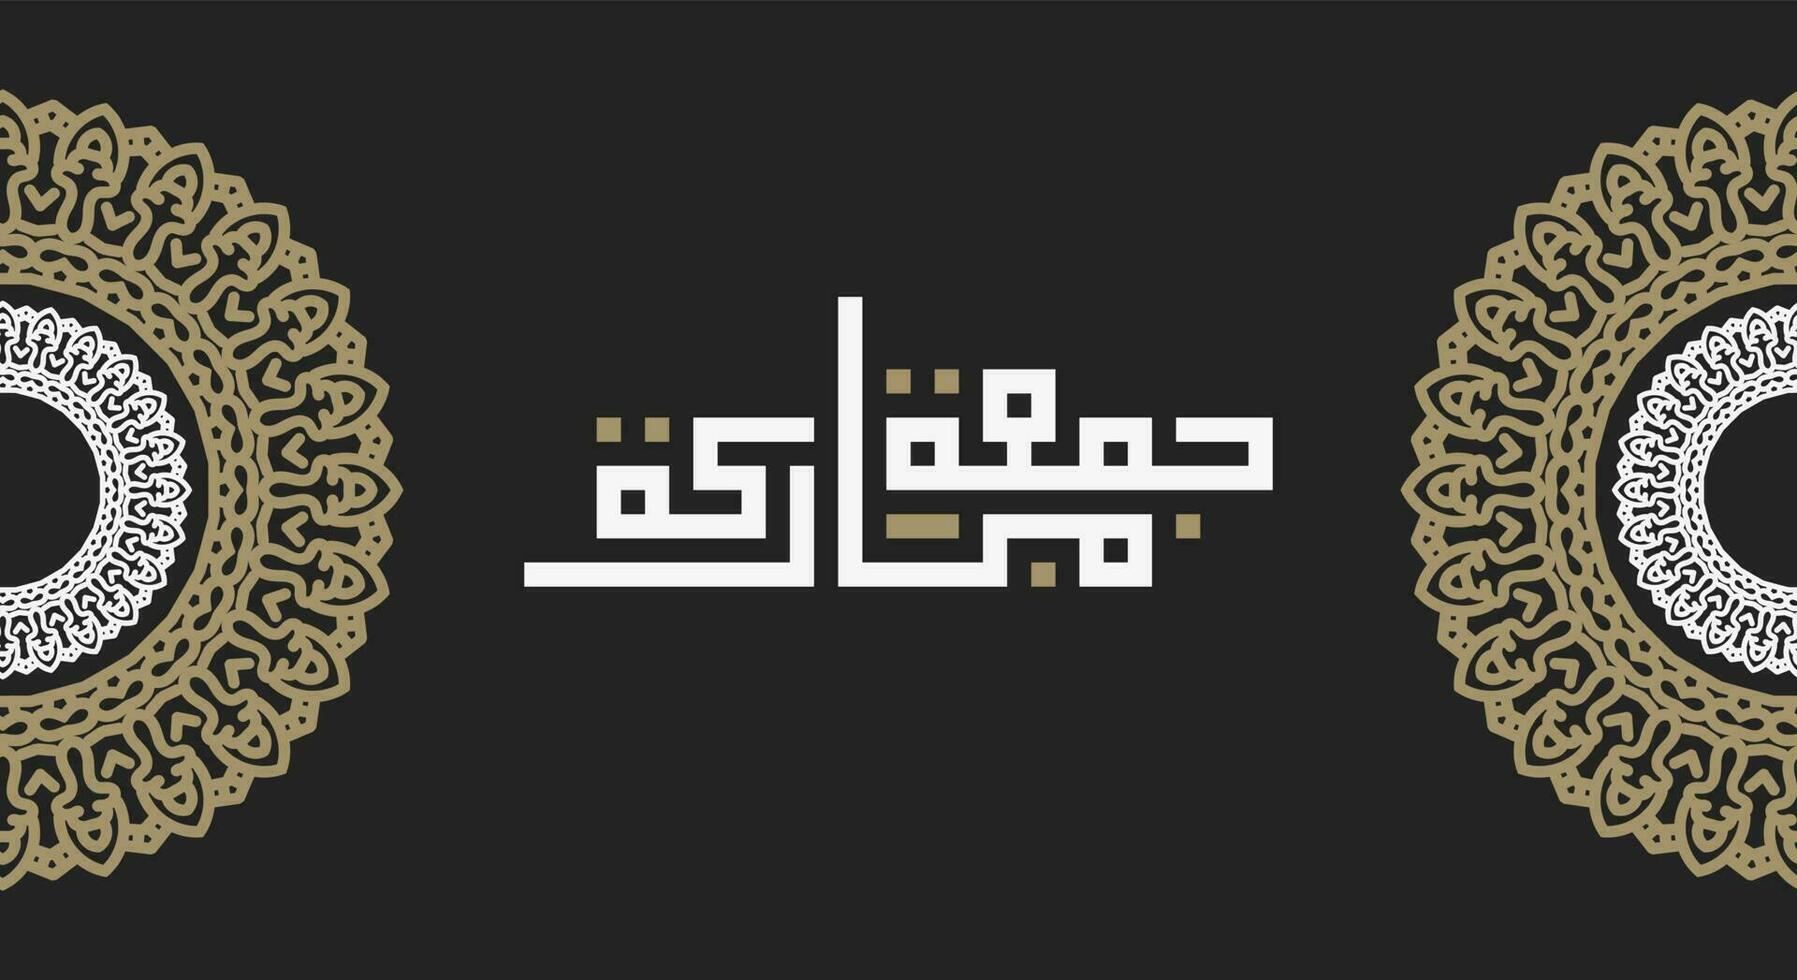 Jumaa Mubaraka arabisches Kalligrafie-Design. Vintage-Logo-Typ für den Karfreitag. grußkarte zum wochenende in der muslimischen welt, übersetzt, möge es ein gesegneter freitag sein vektor